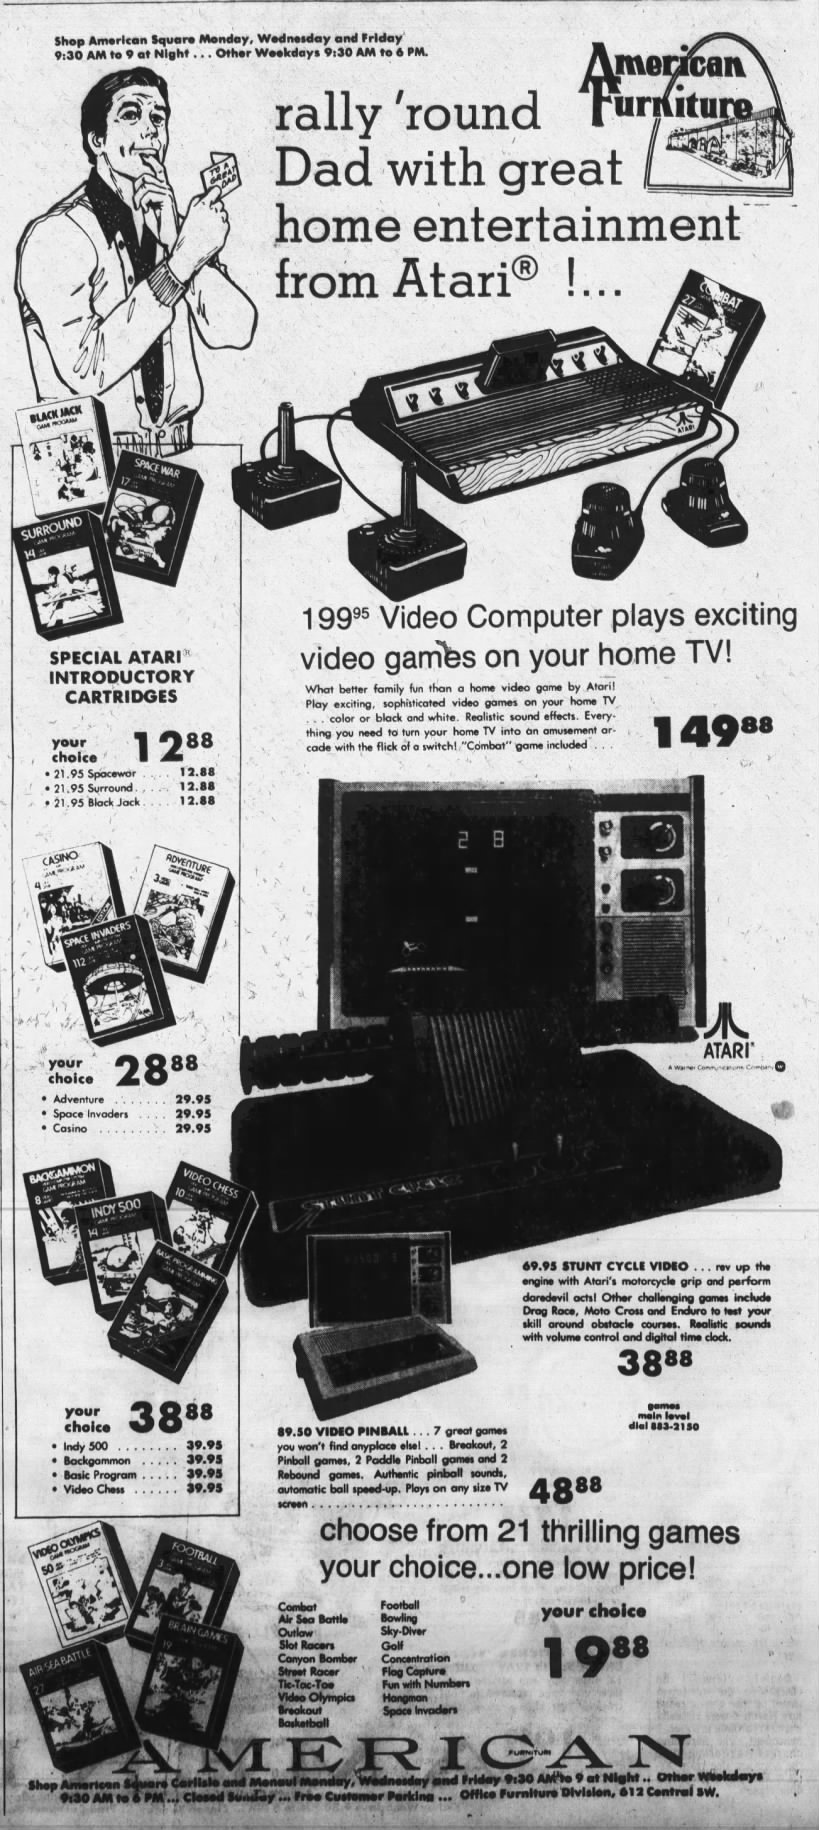 Atari 2600: American Furniture (Jun 11, 80)